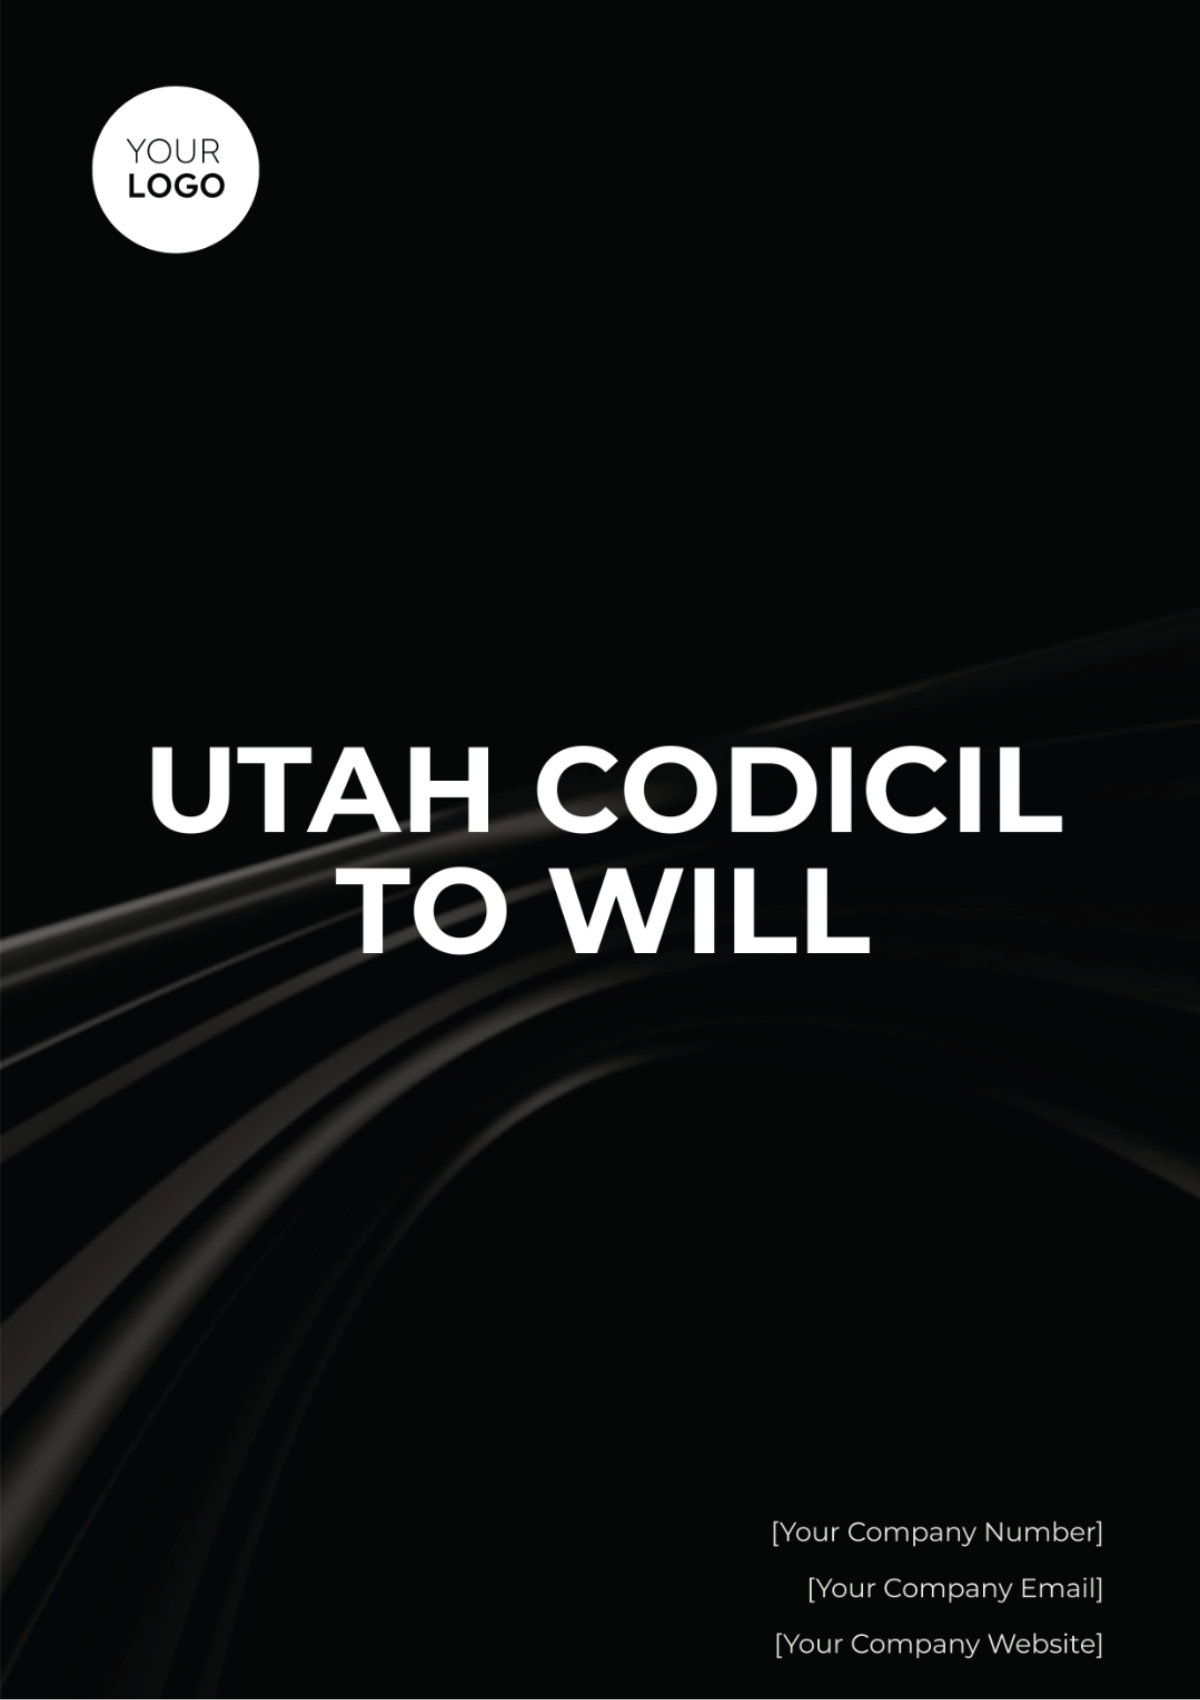 Utah Codicil to Will Template